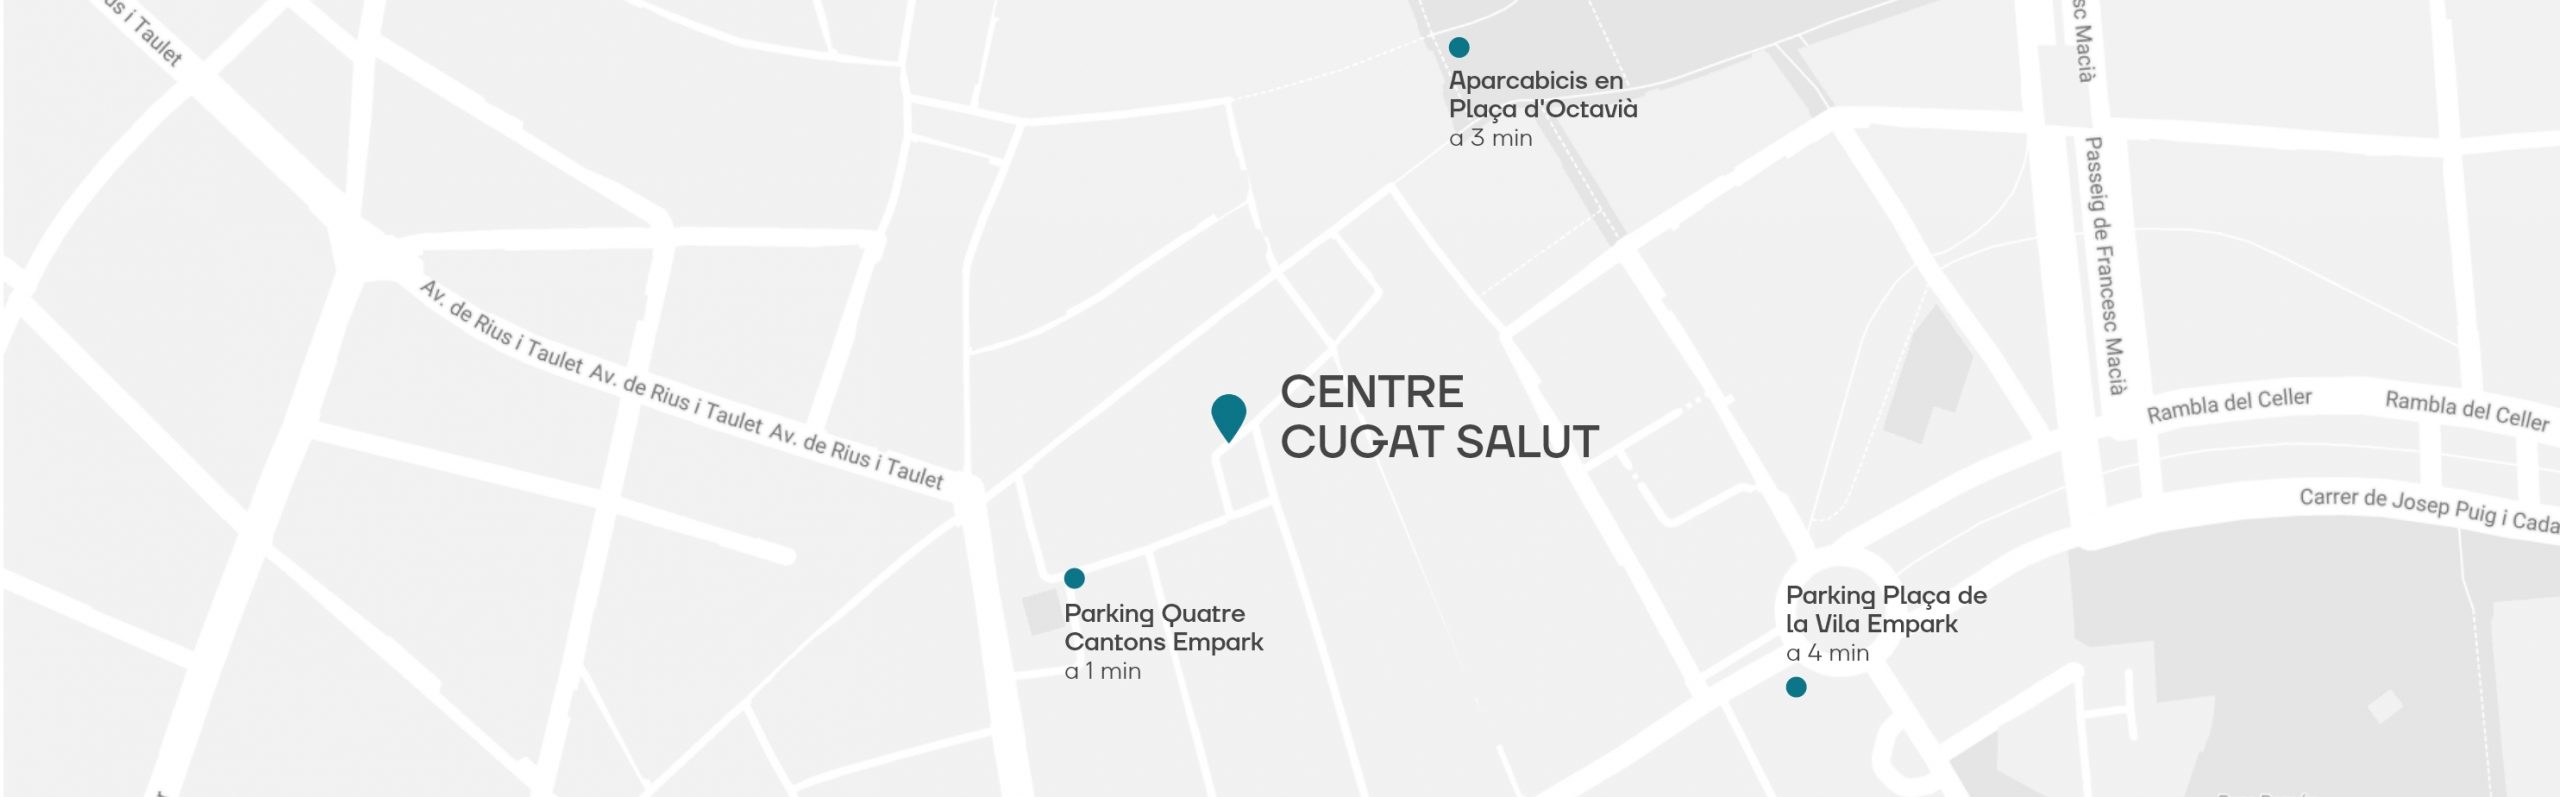 Mapa, ubicación Centre Cugat Salut